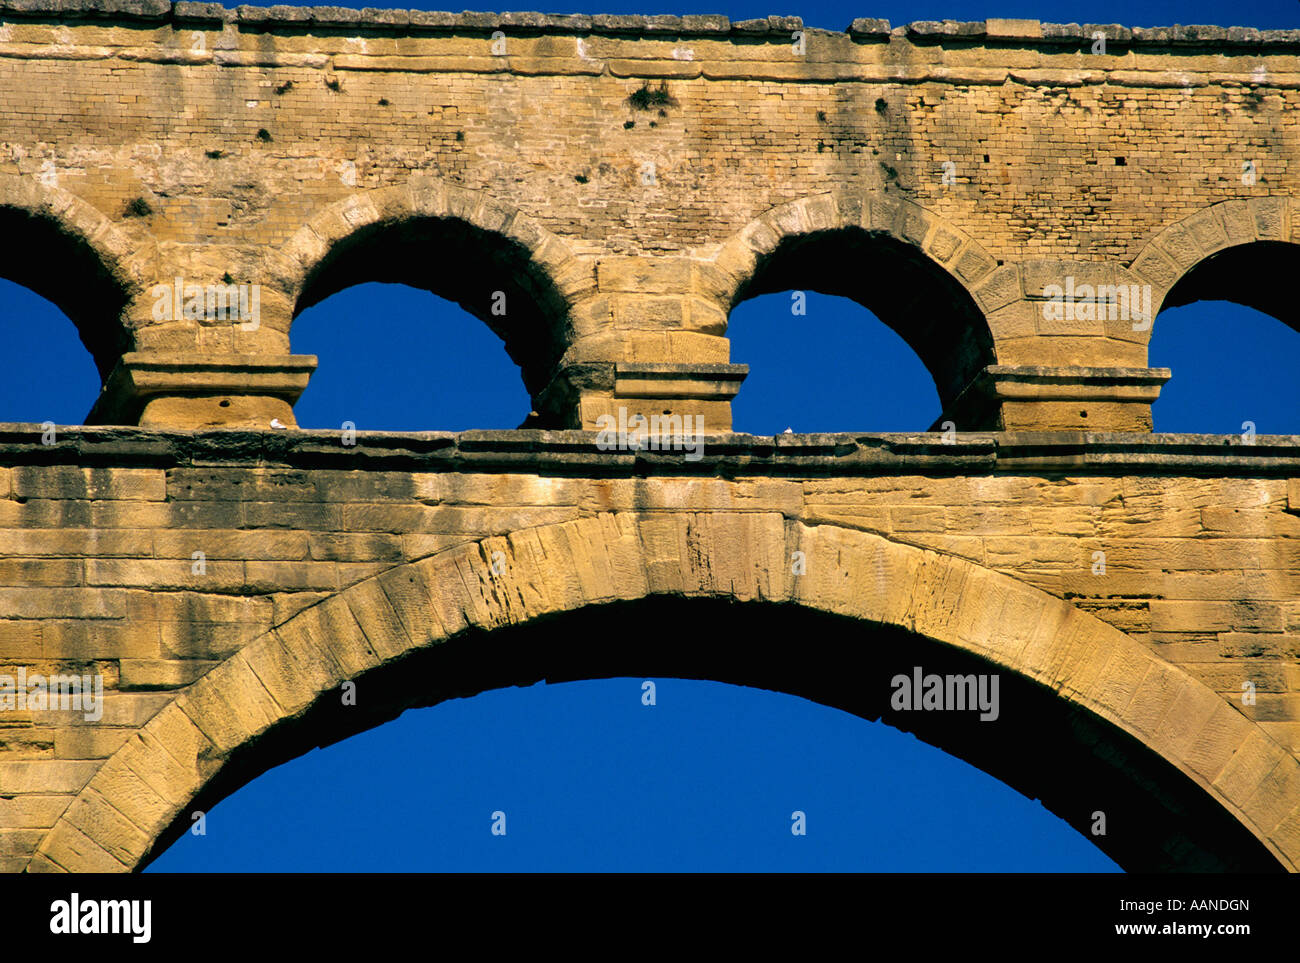 Römische Wasserleitung - der Pont du Gard über den Fluss Gardon in Vers-Pont-du-Gard in der Nähe von Remoulins, Languedoc, Frankreich Stockfoto